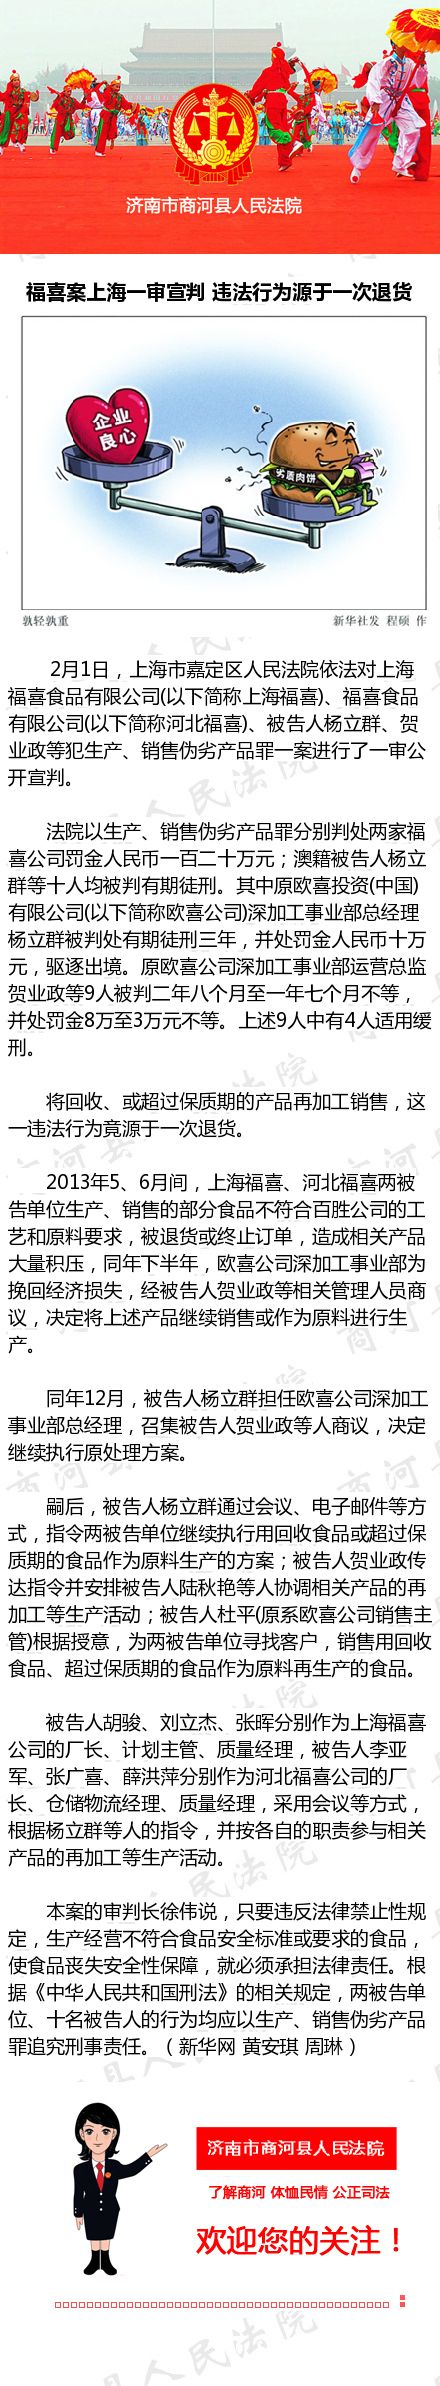 福喜案上海一审宣判 违法行为源于一次退货